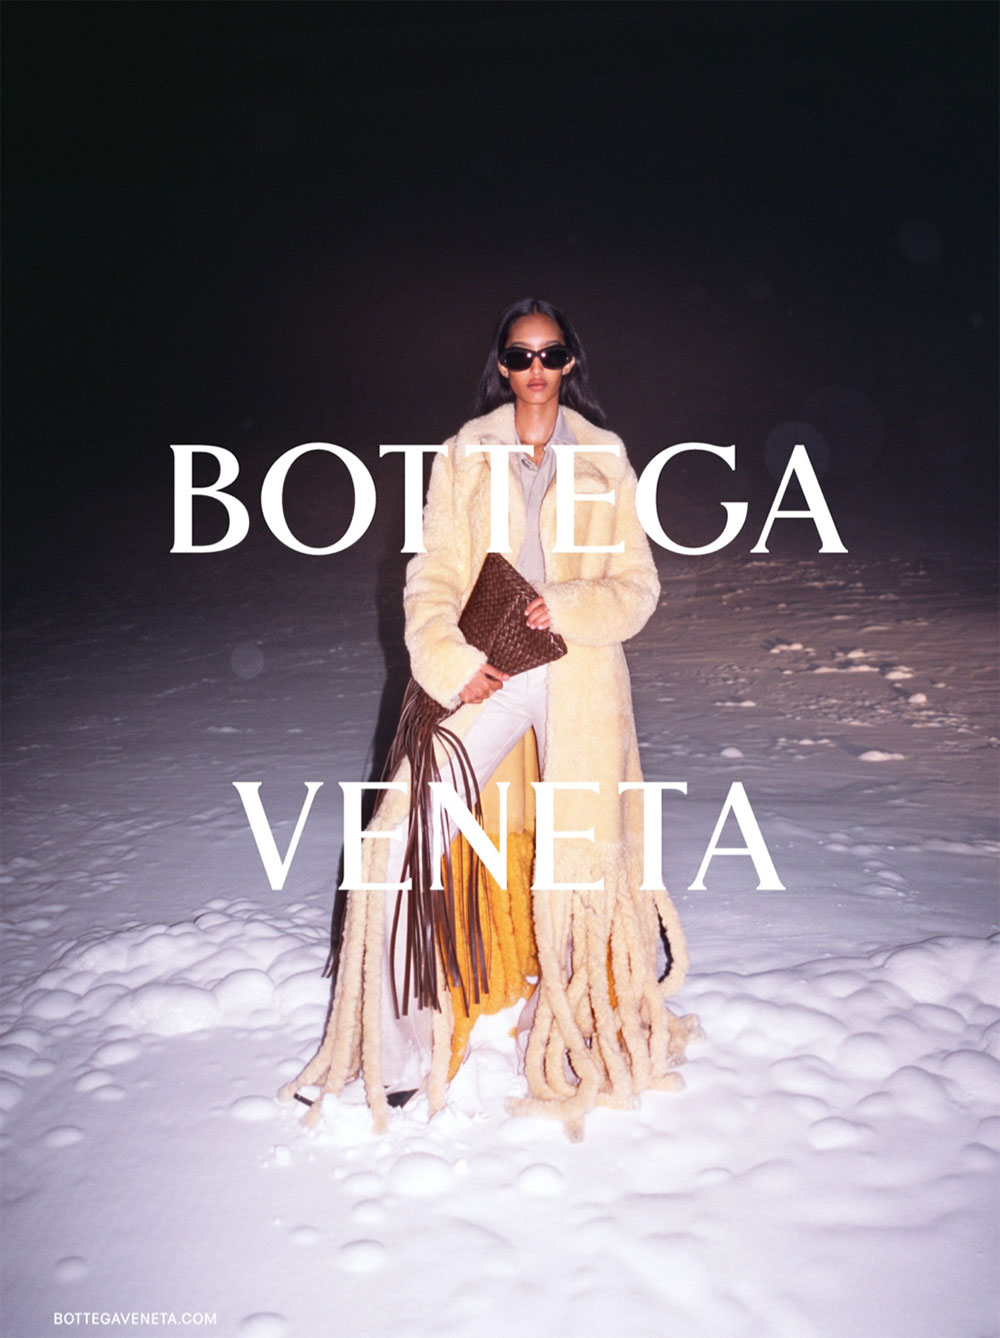 Chiếc túi tua rua của Bottega Veneta được đánh giá cao ở tính đột phá, độc đáo nhưng lại chưa thật sự tiện lợi khi mang theo sử dụng hàng ngày.